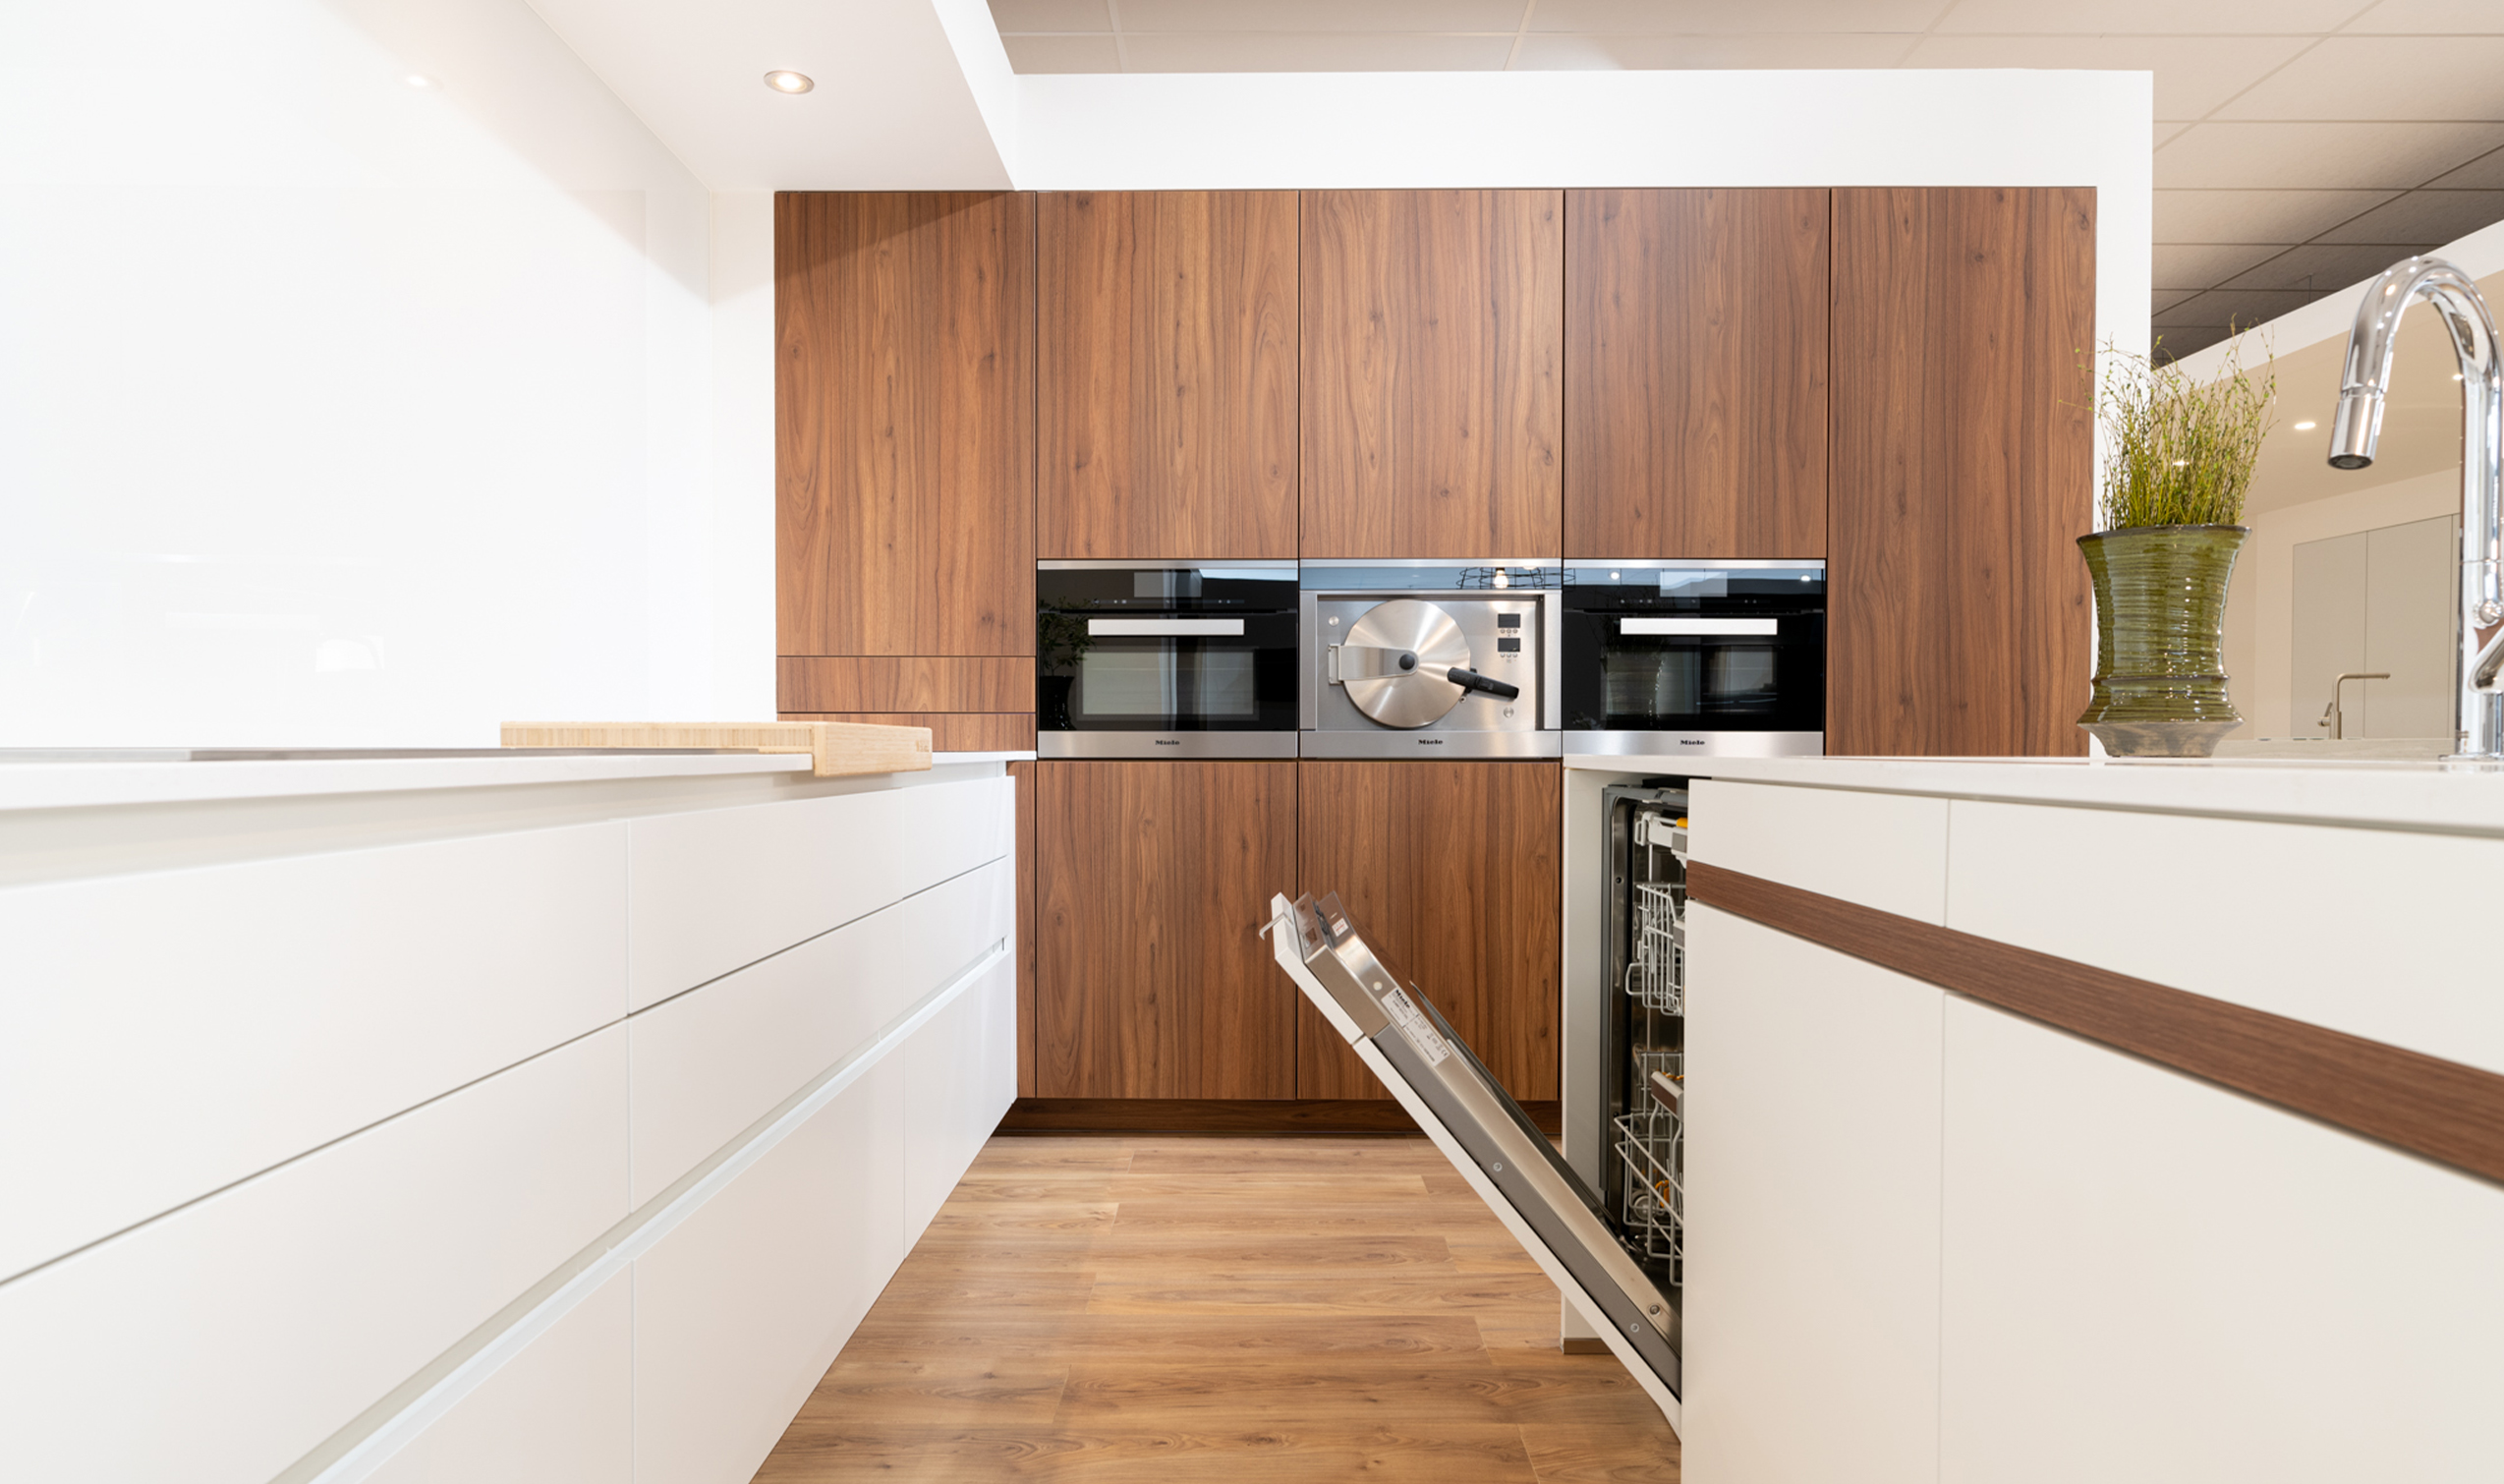 Advies door interieurarchitect keuken over de juiste keuken inbouwtoestellen